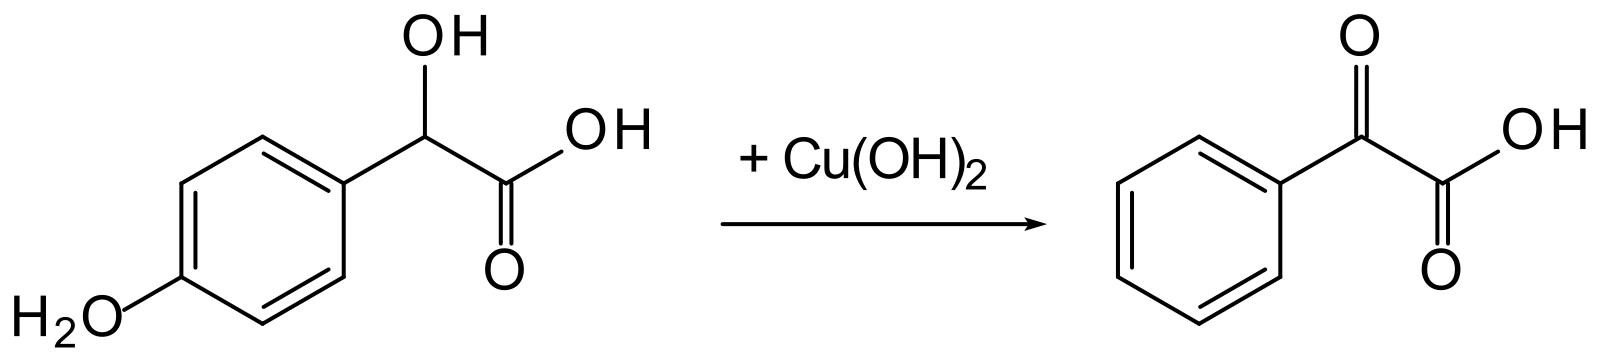 Гидролиз аспирина. Получение ацетилсалициловой кислоты из салициловой кислоты. Синтез аспирина из салициловой кислоты. Схема реакции получения ацетилсалициловой кислоты. Реакция получения ацетилсалициловой кислоты из салициловой кислоты.